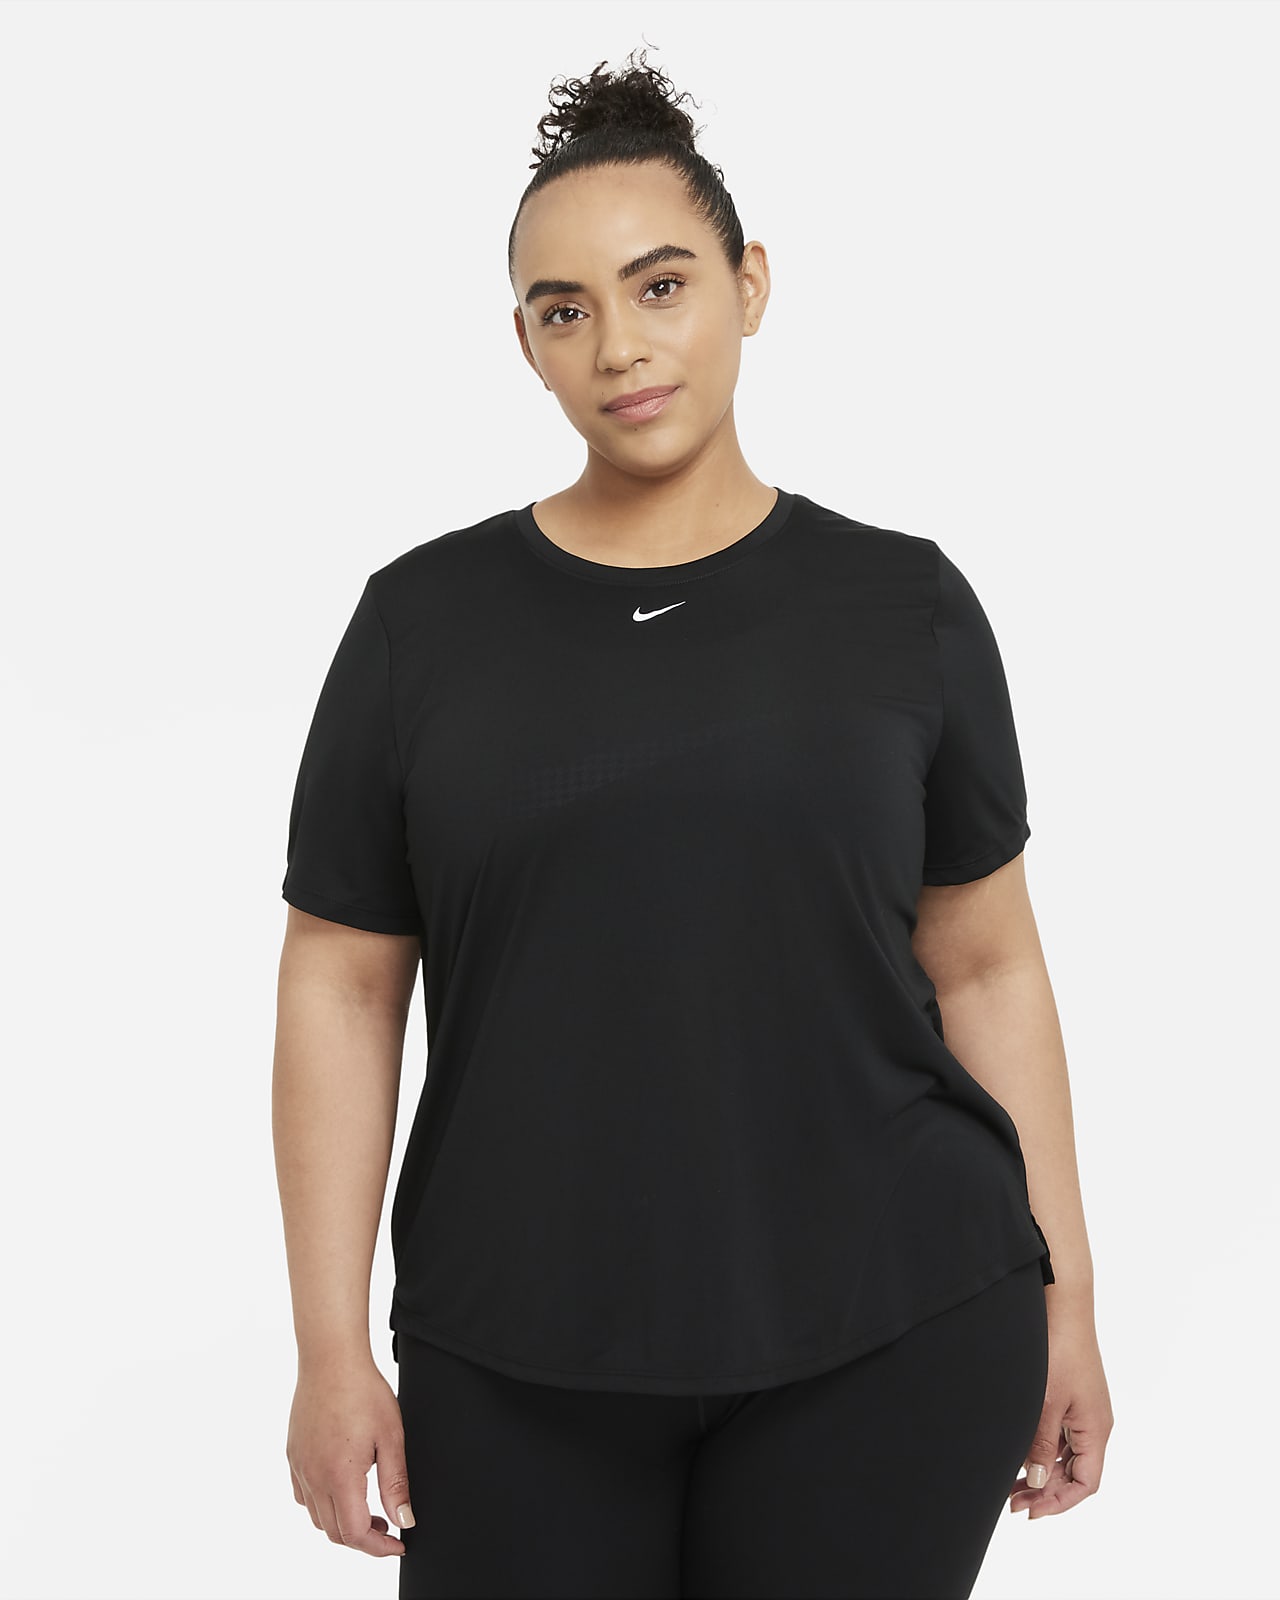 เสื้อแขนสั้นทรงมาตรฐานผู้หญิง Nike Dri-FIT One (พลัสไซส์)